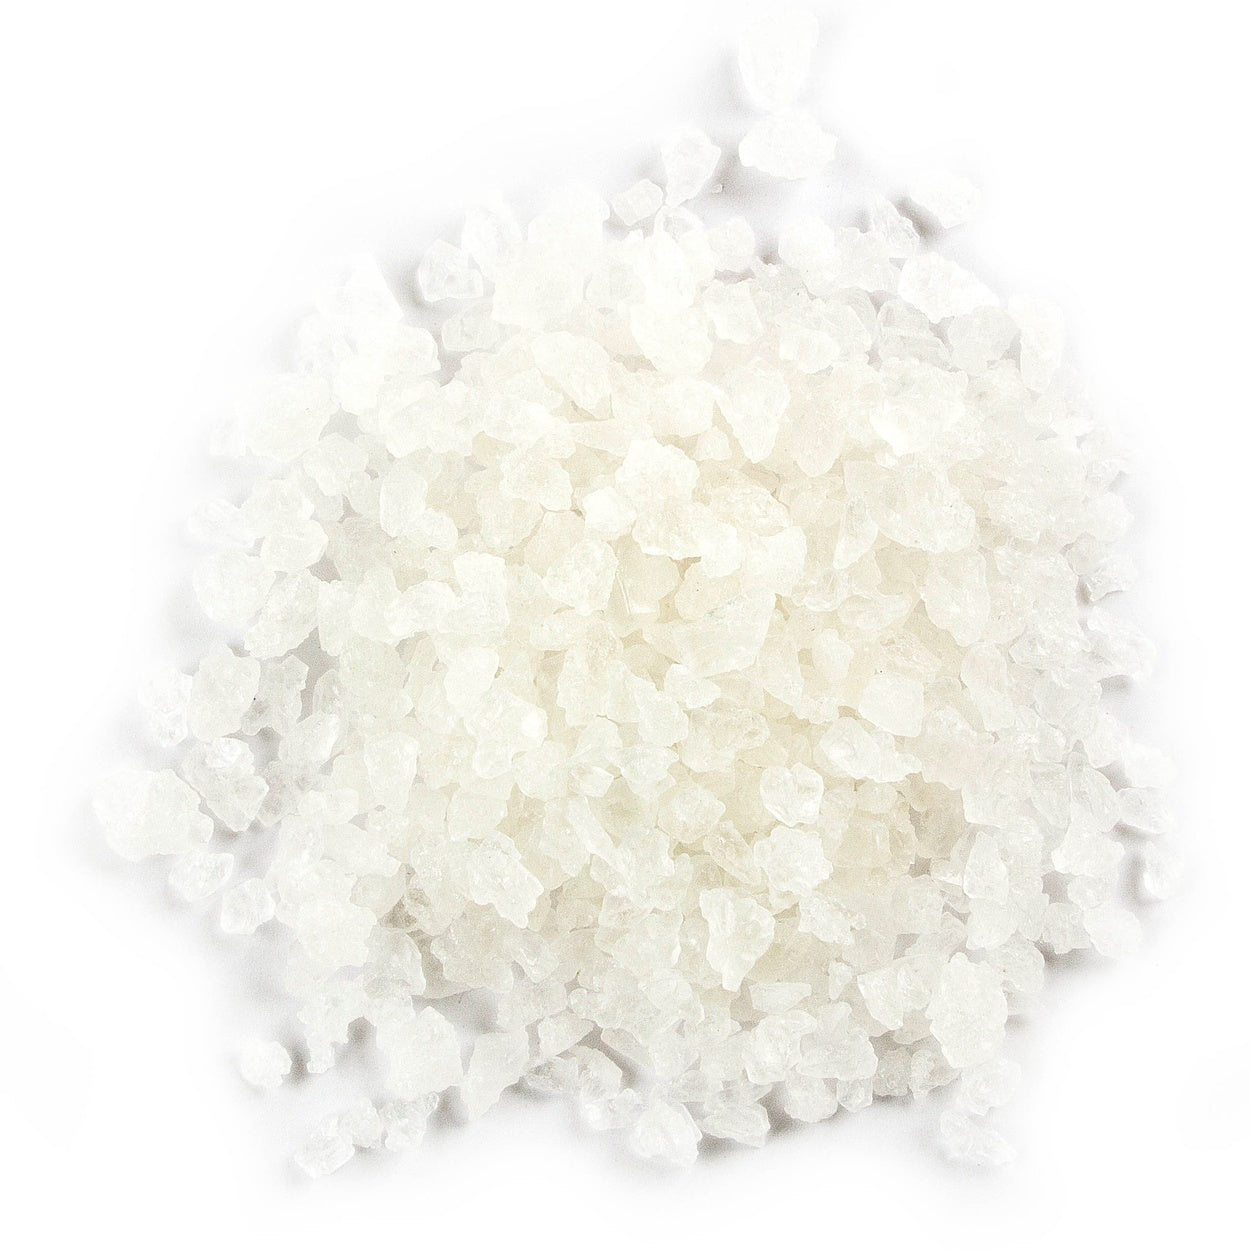 White Rock Sugar - 1lb